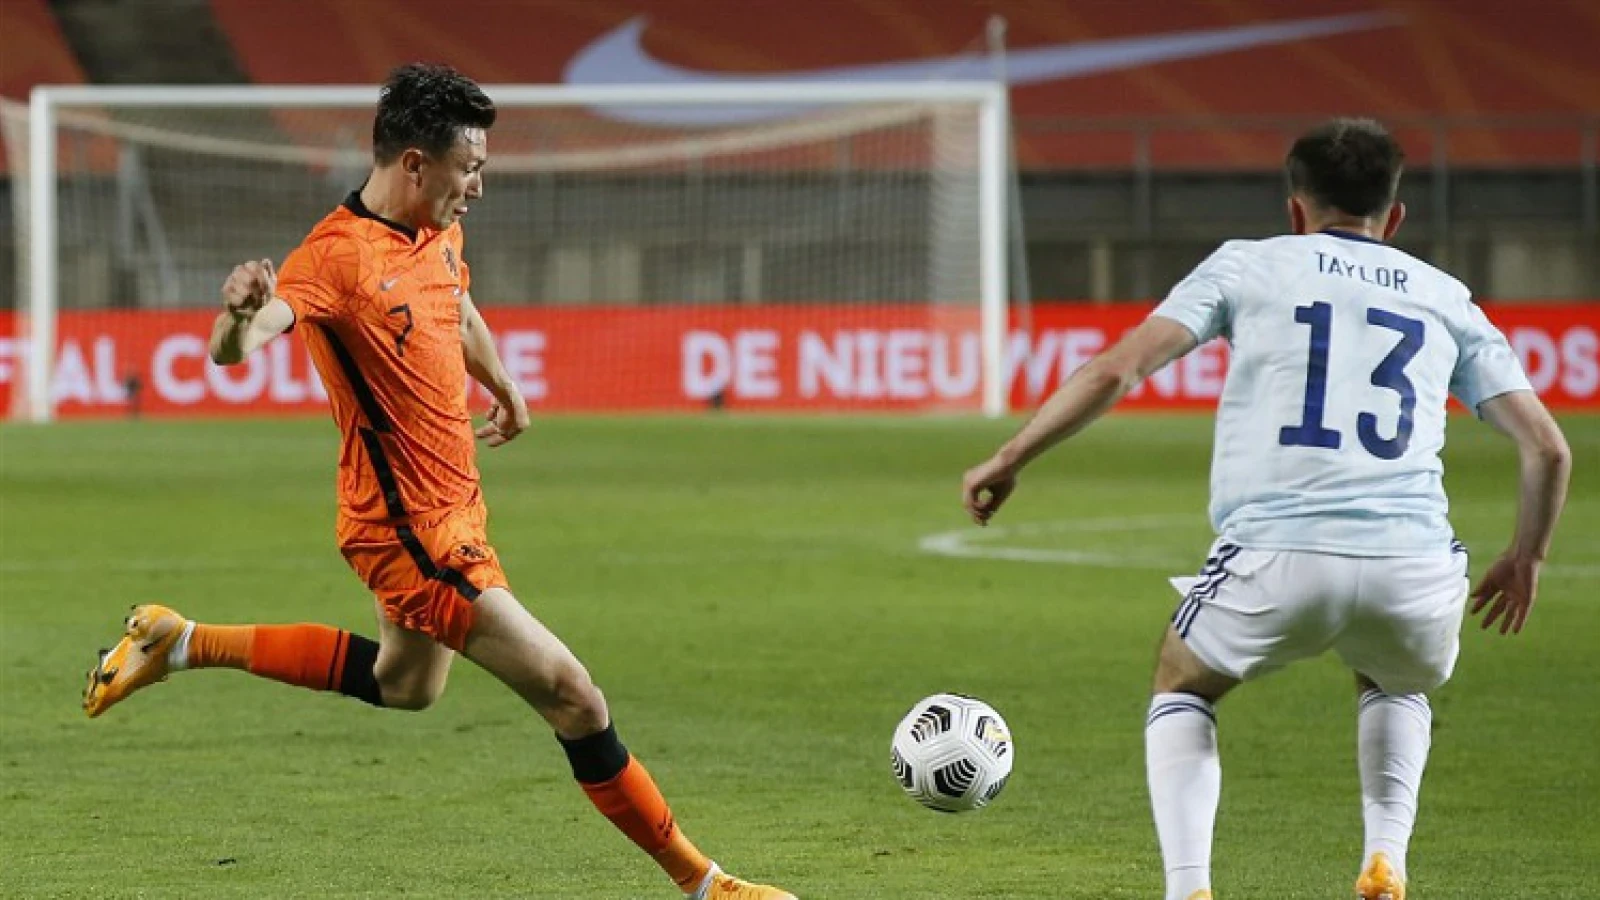 LIVE | Nederland - Georgië 3-0 | Einde wedstrijd 